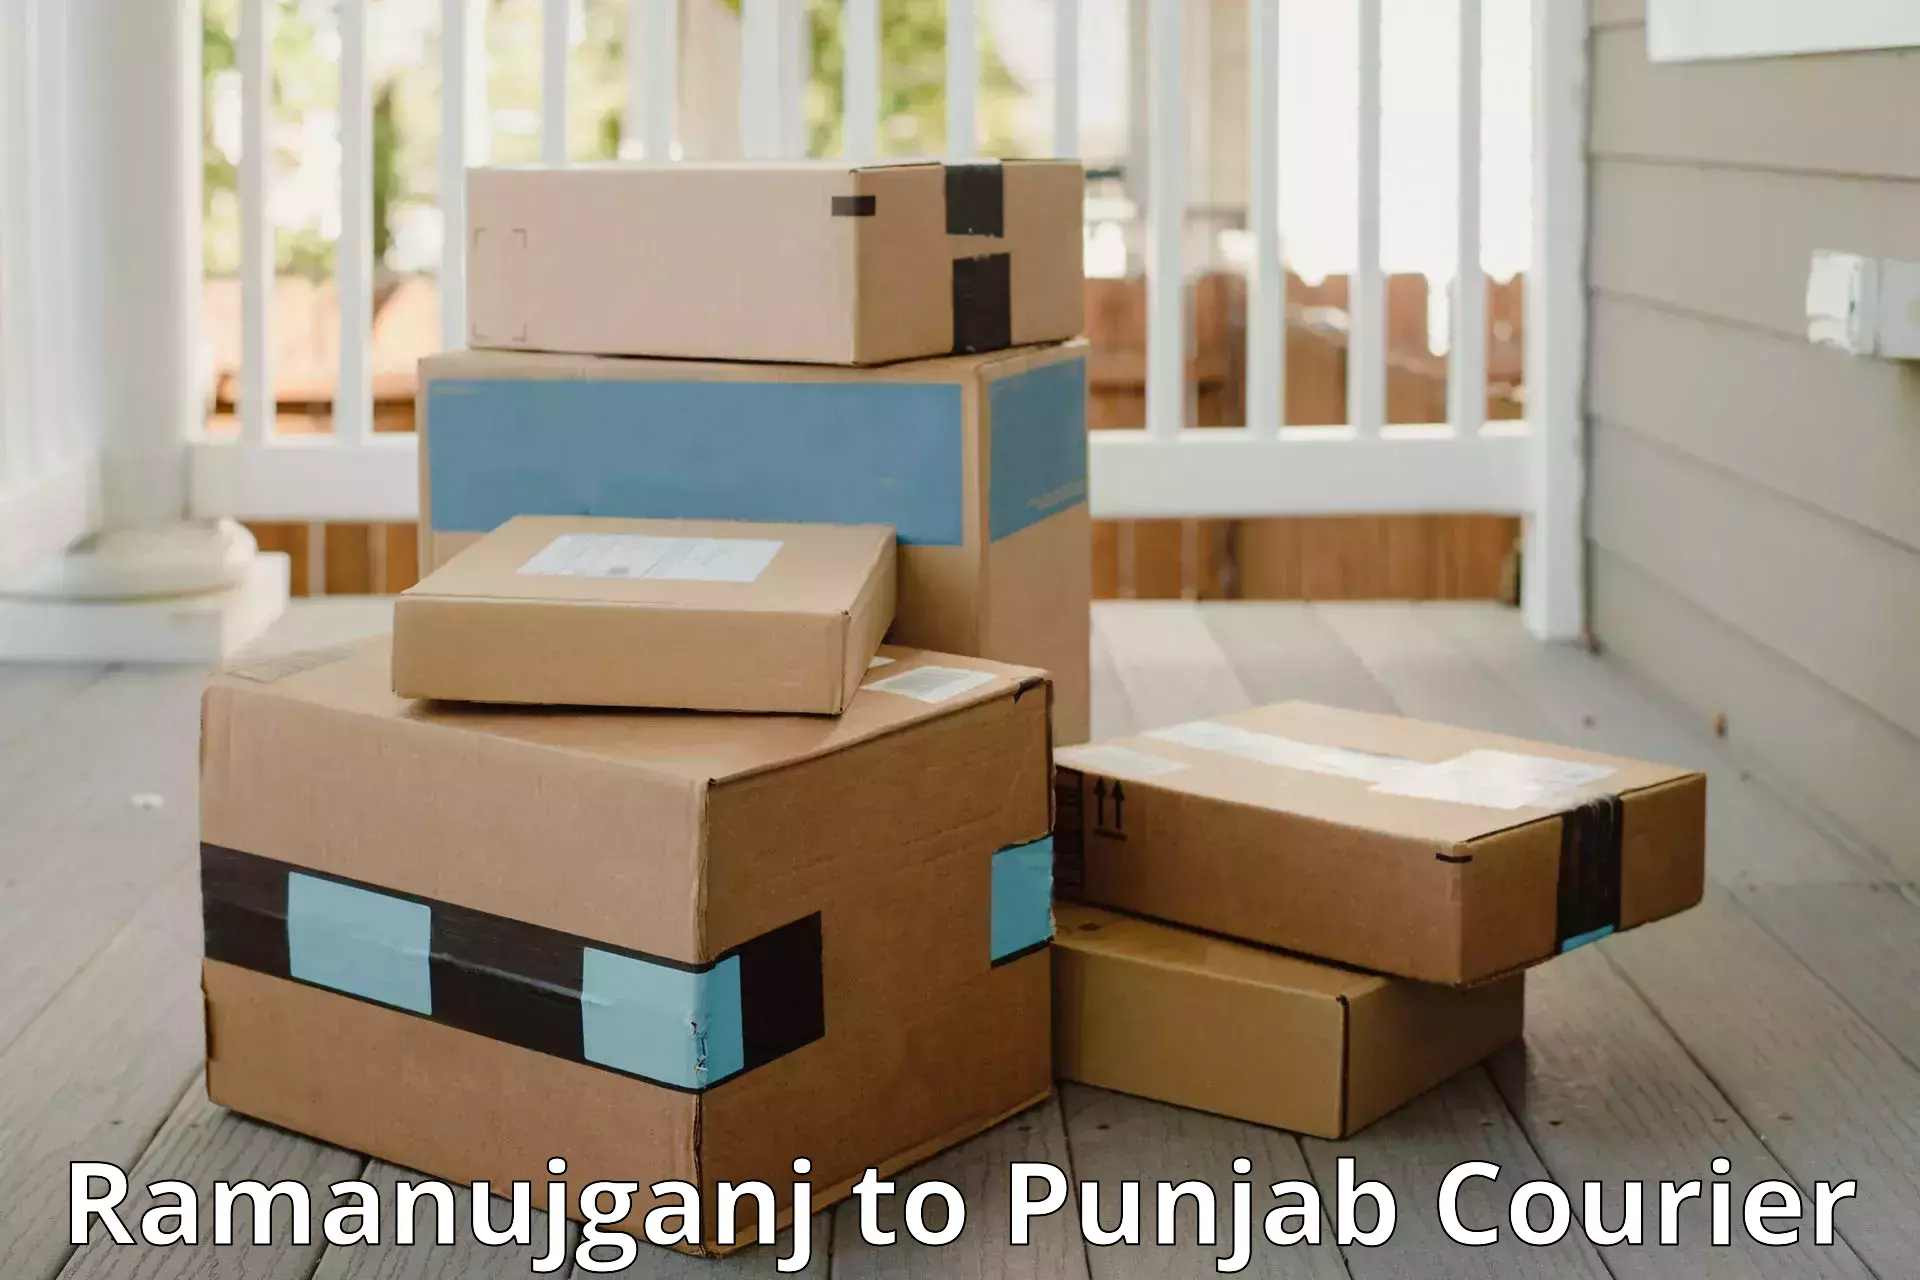 Urgent luggage shipment Ramanujganj to Ludhiana